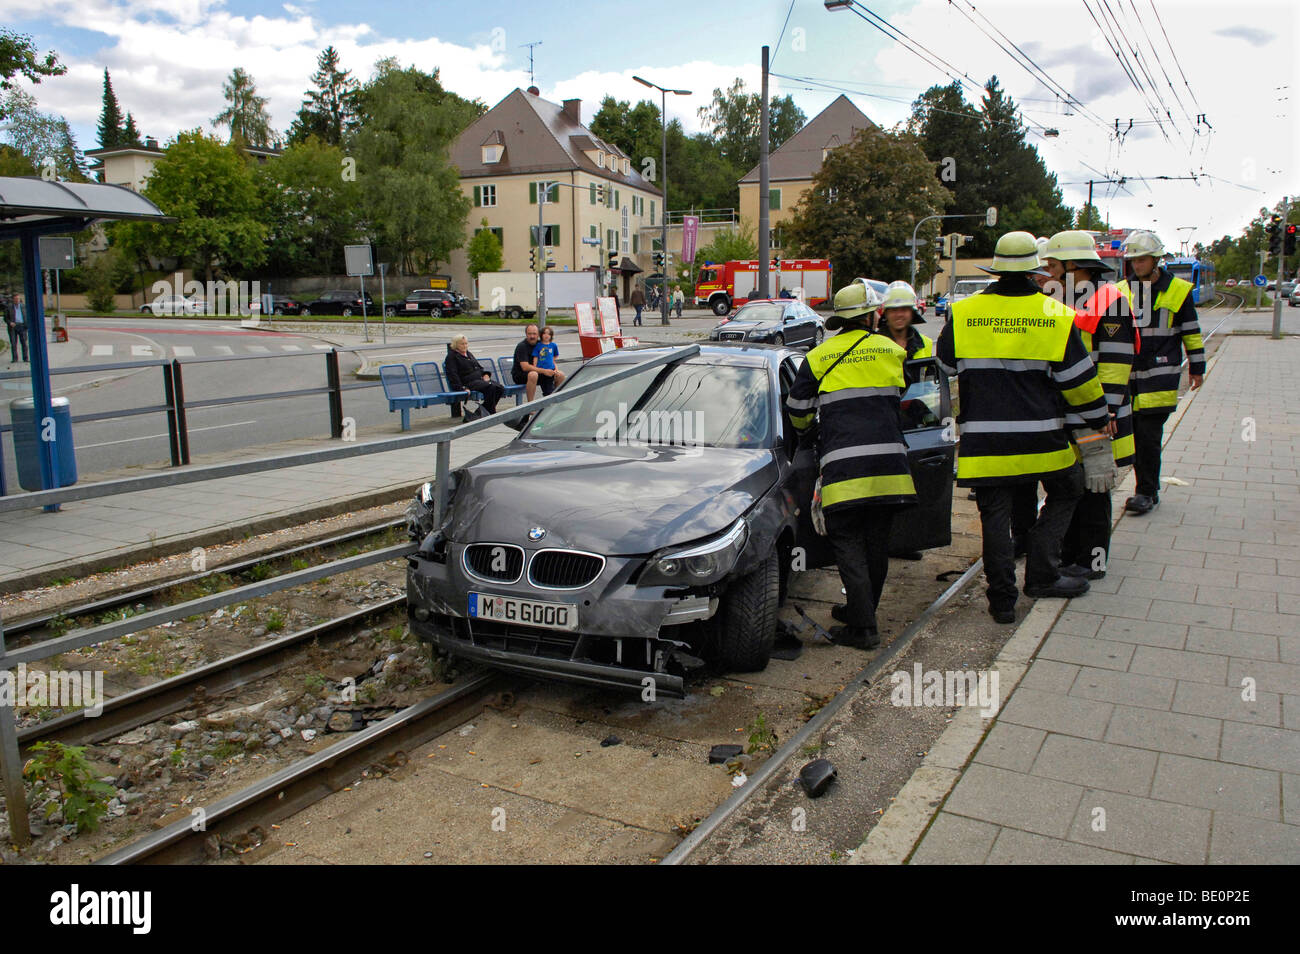 Unfall Auto auf Straßenbahn verfolgt, Kfz-Kennzeichen geändert, München, Bayern, Deutschland, Europa Stockfoto